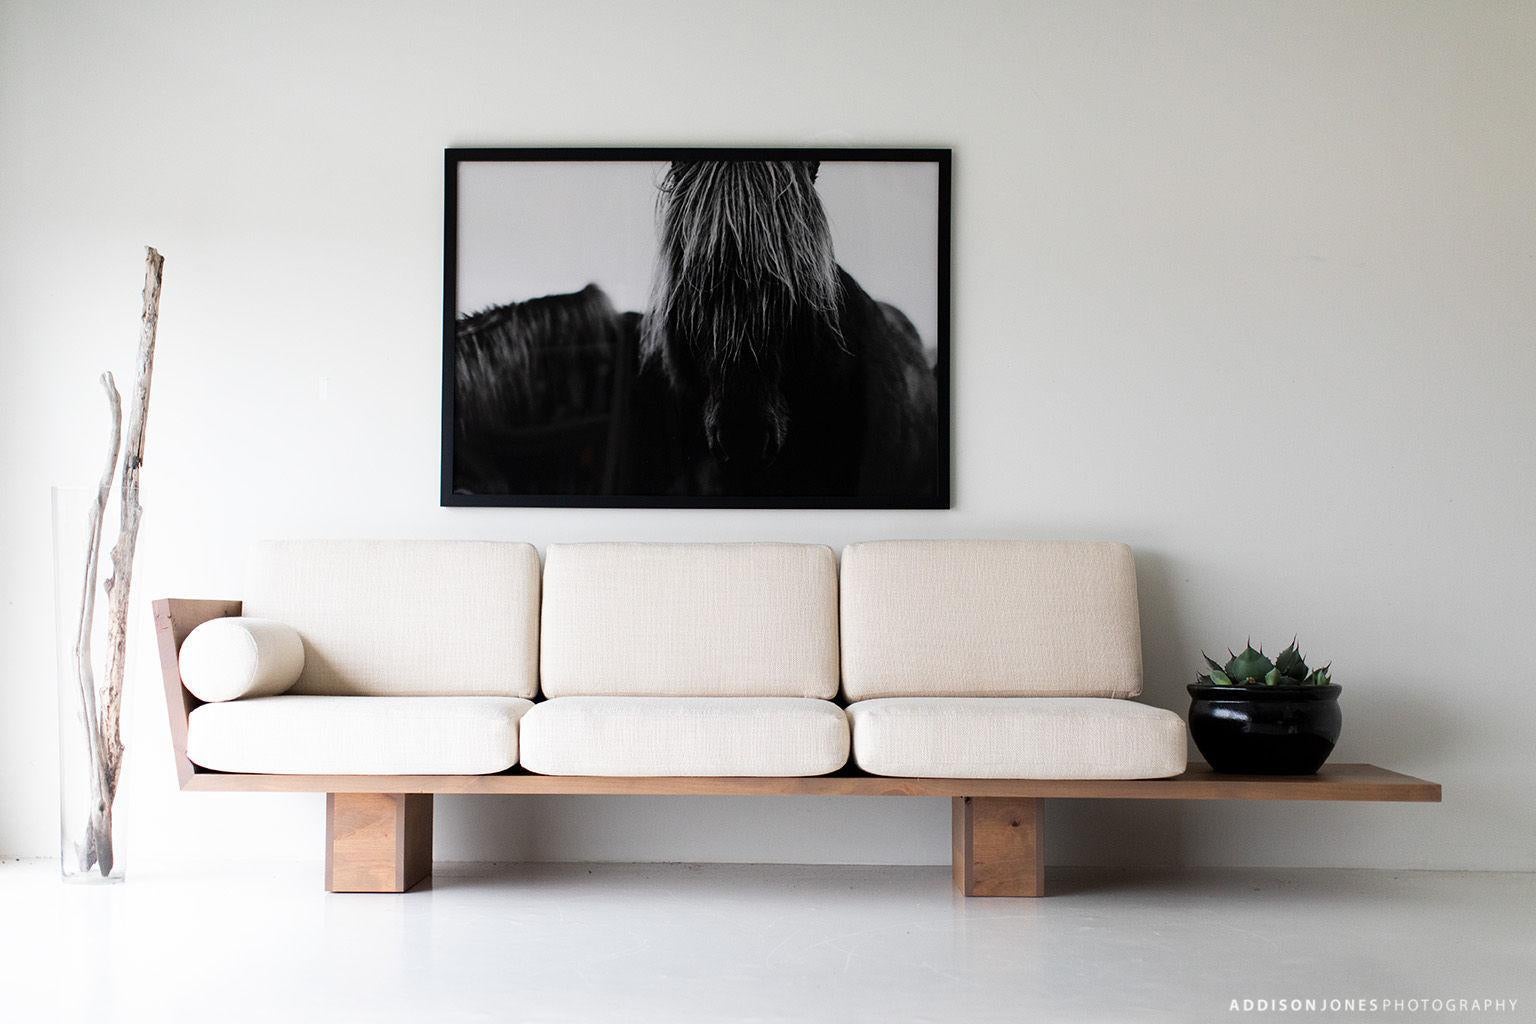 Dieses moderne Holzsofa von Suelo wurde in Ohio, USA, aus massivem Holz gefertigt. Die Silhouette des Sofas ist einfach, modern und schlank, mit bequemen Rücken- und Sitzkissen. Das ist das perfekte Sofa für jeden Raum, ob drinnen oder draußen. Die